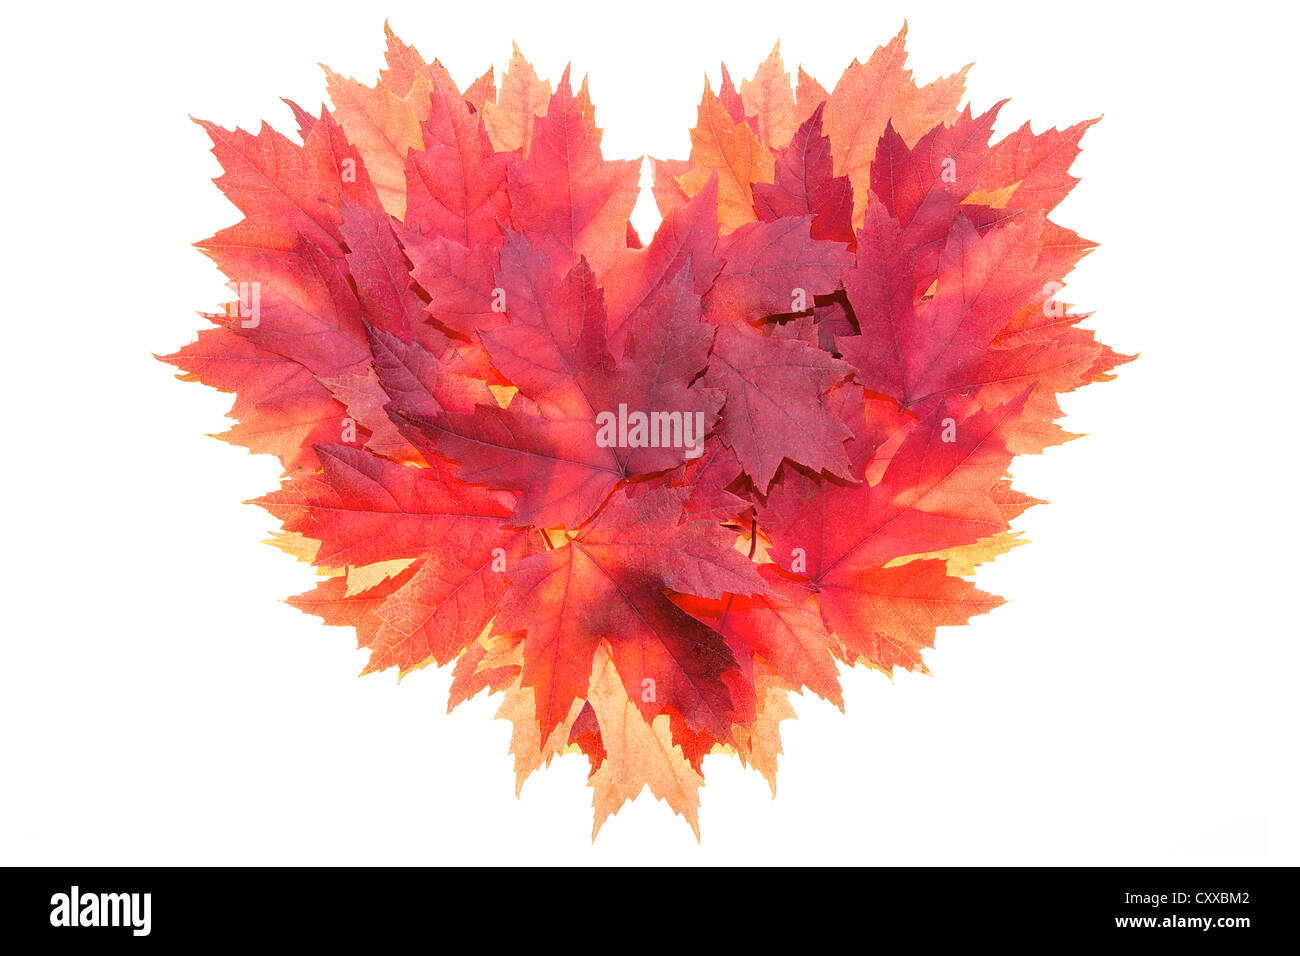 Herbst-Saison, die roten Ahorn-Baum-Blätter bilden Herz isolierten auf weißen Hintergrund gestalten Stockfoto